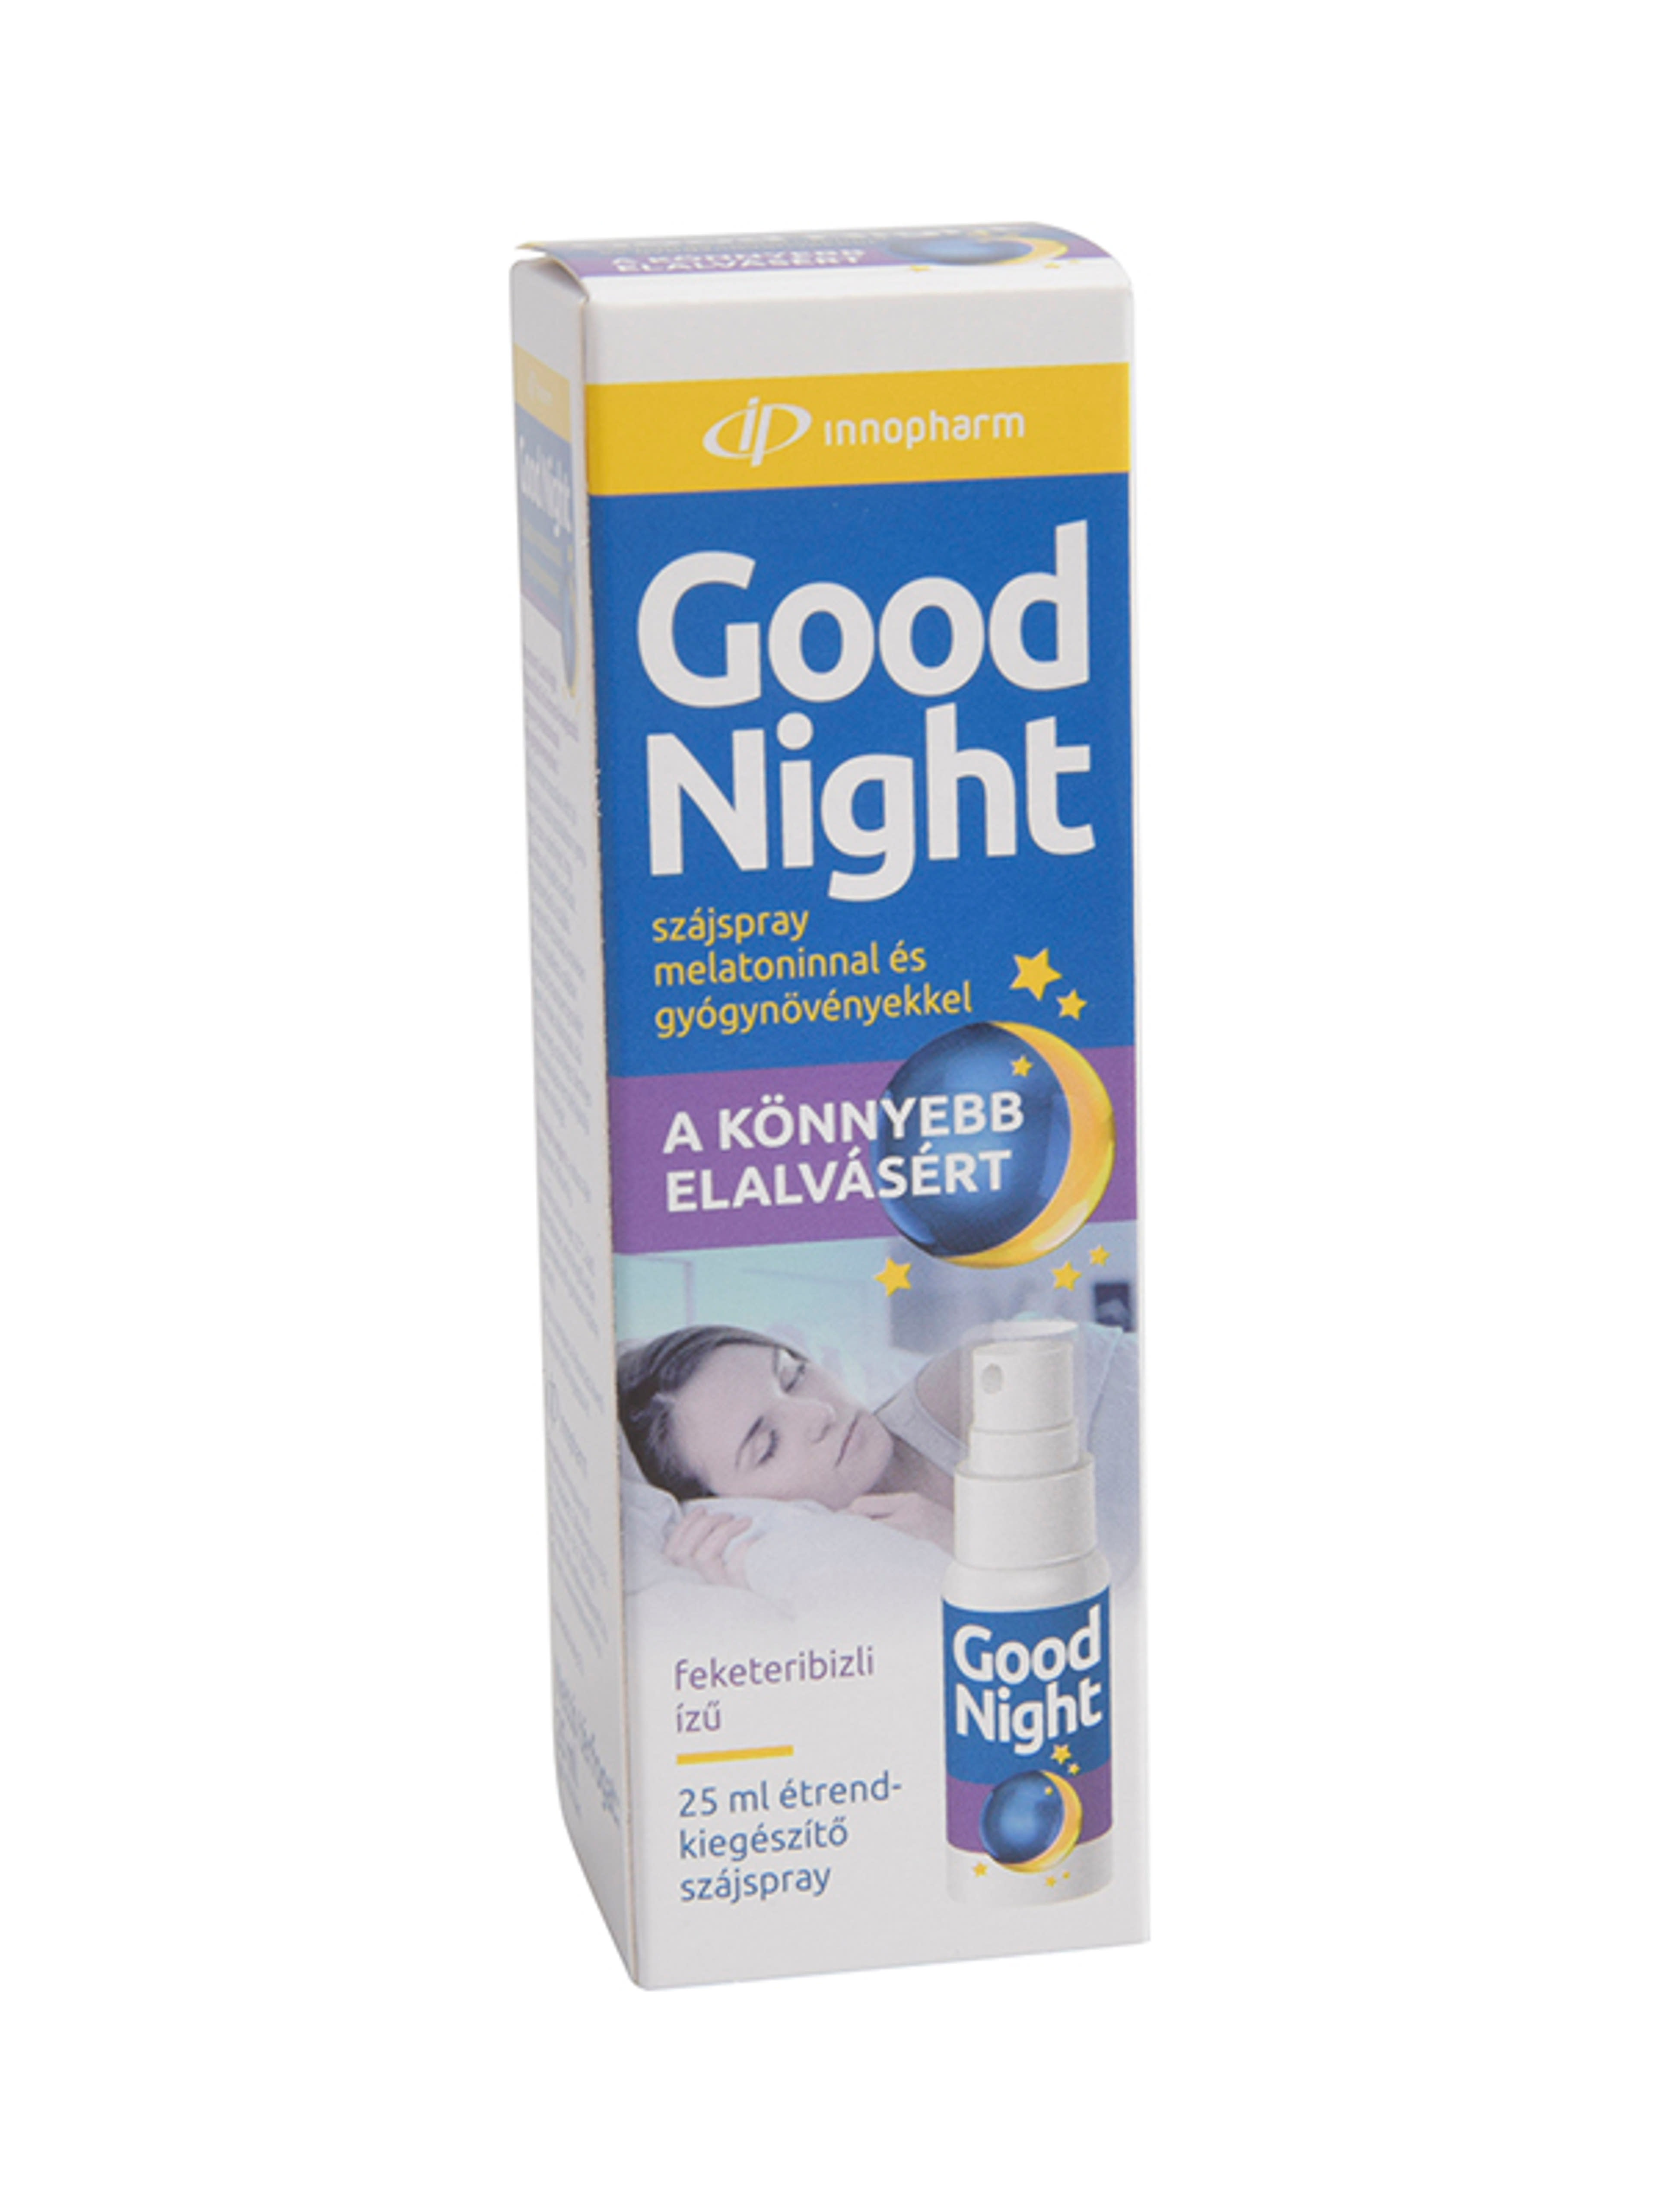 Innopharm Good Night étrend-kiegészítő szájspray melatoninnal és gyógynövényekkel feketeribizli ízű - 25 ml